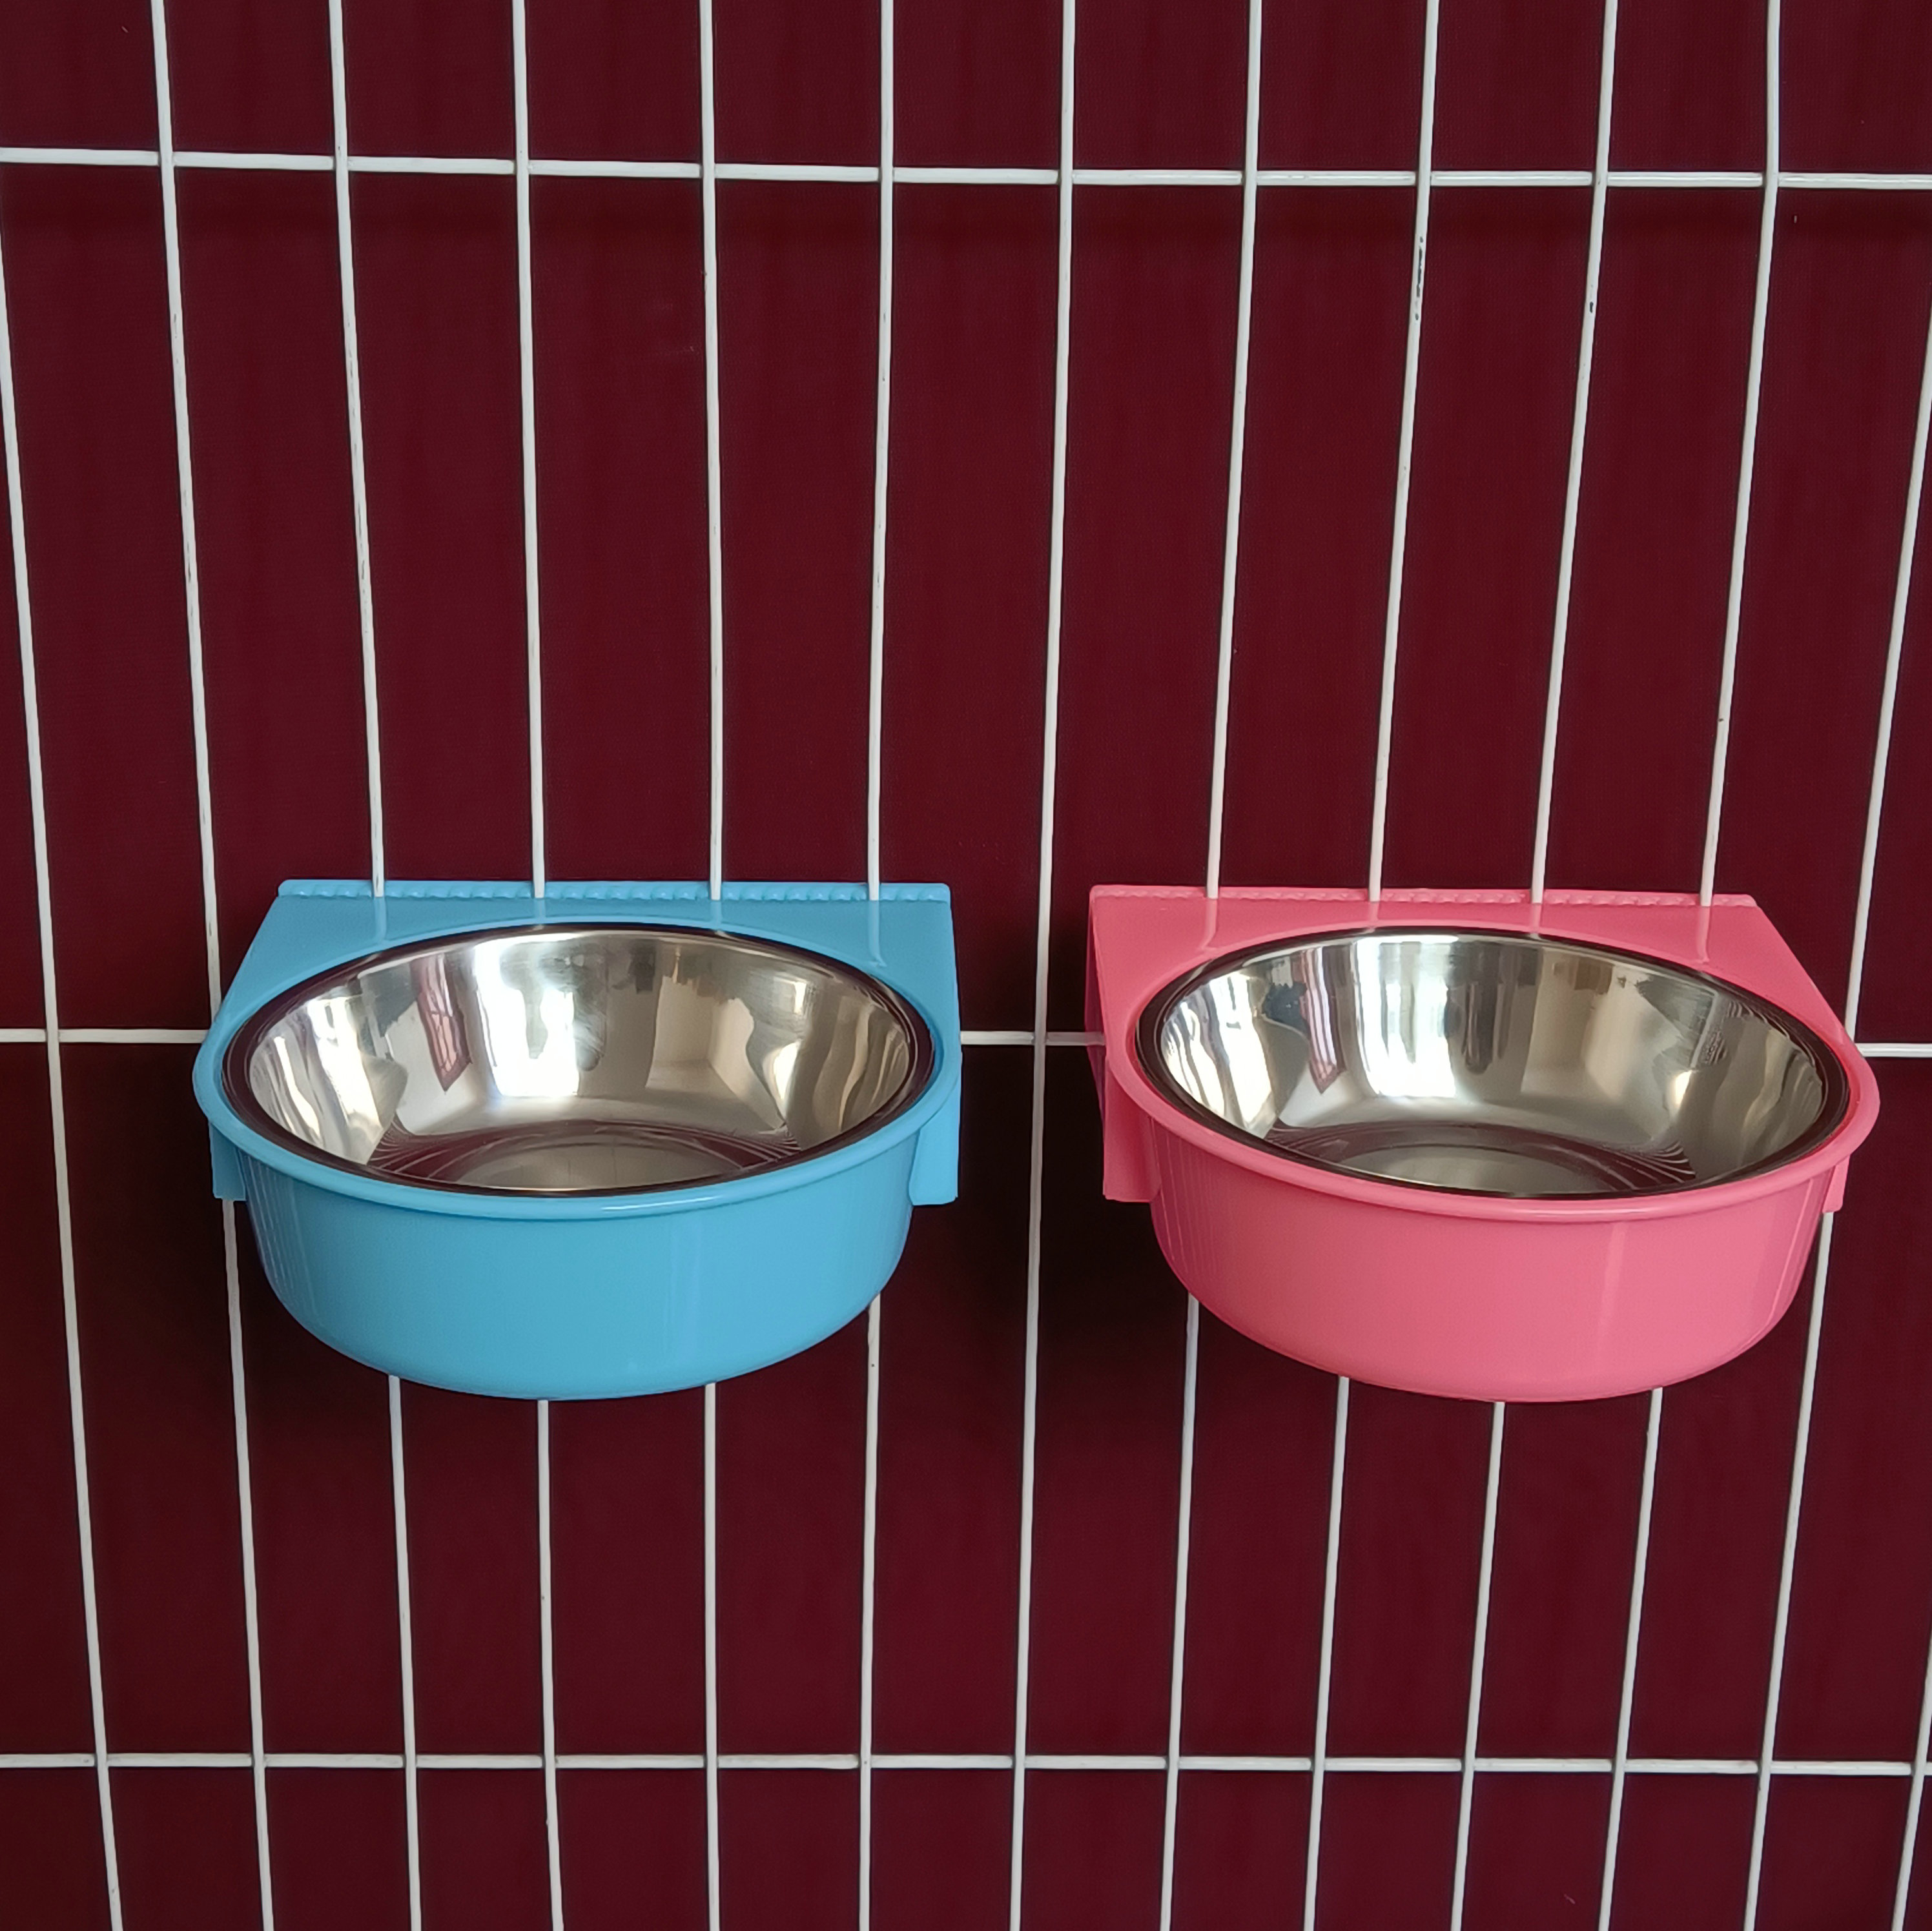 宠物用品狗笼悬挂式不锈钢狗碗可固定防止打翻猫碗粉色食盆饮水盆 - 图1